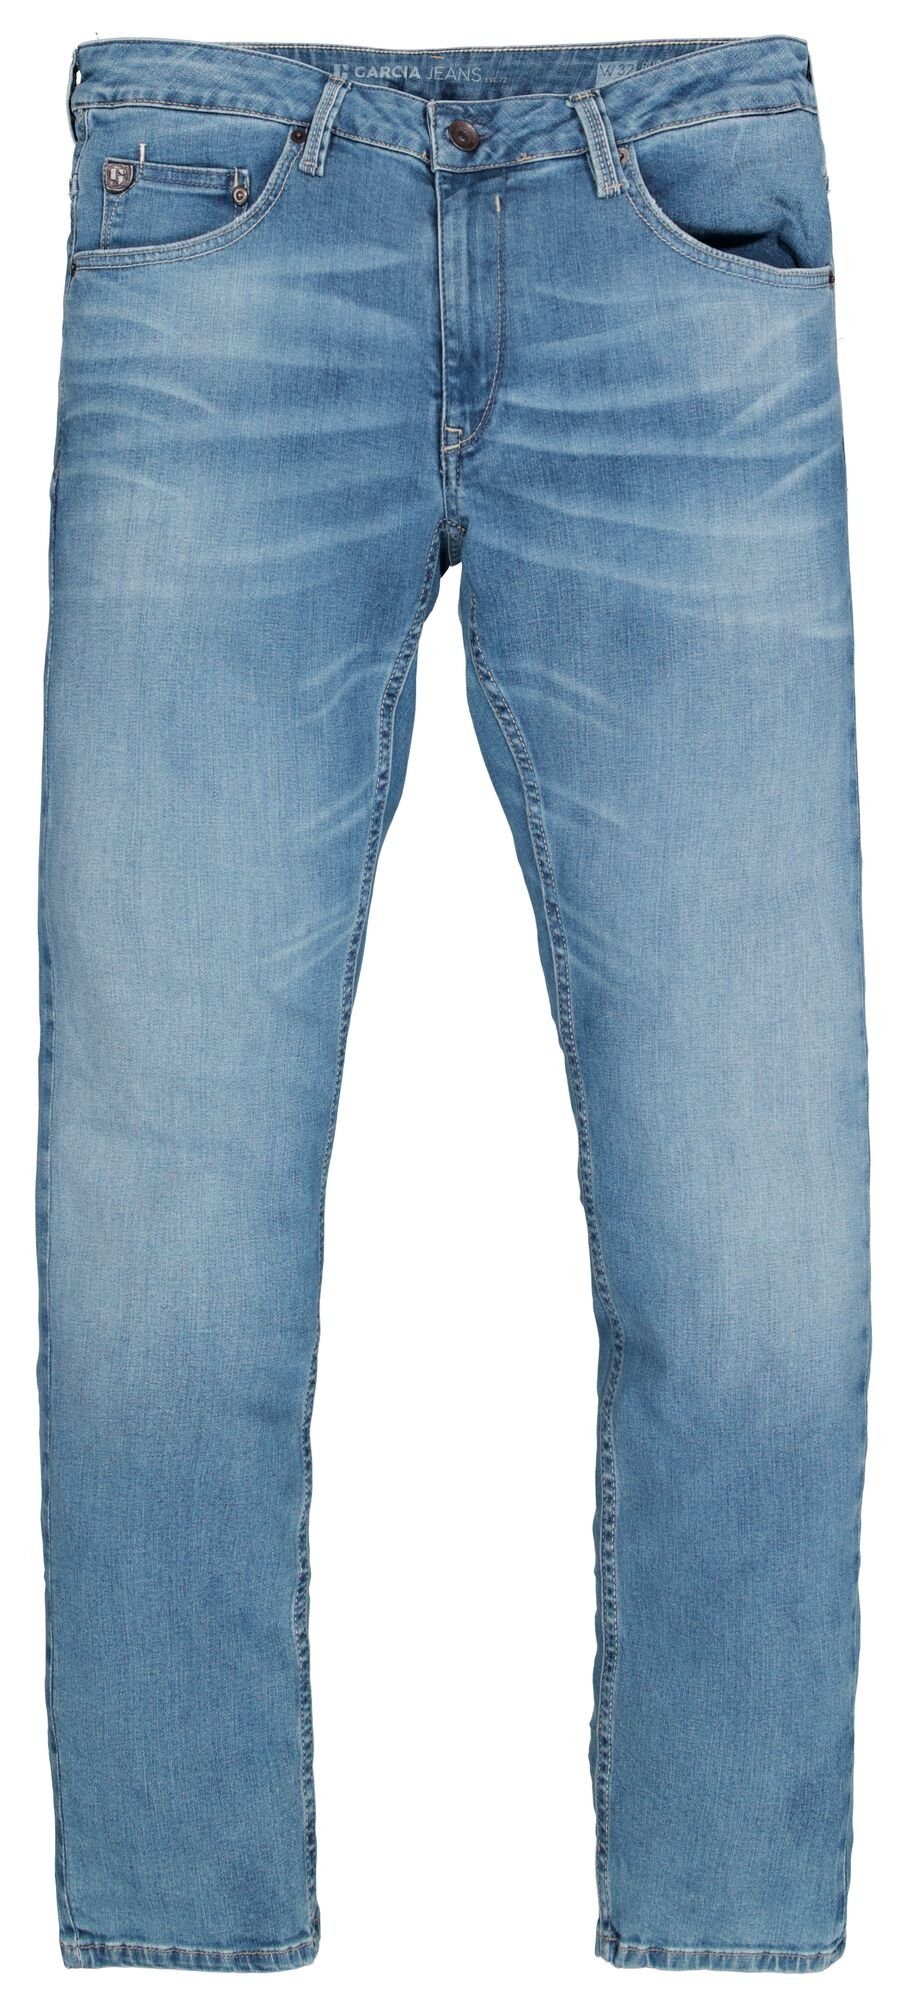 RUSSO 5-Pocket-Jeans GARCIA Motion used light blue JEANS 611.6545 GARCIA Denim -